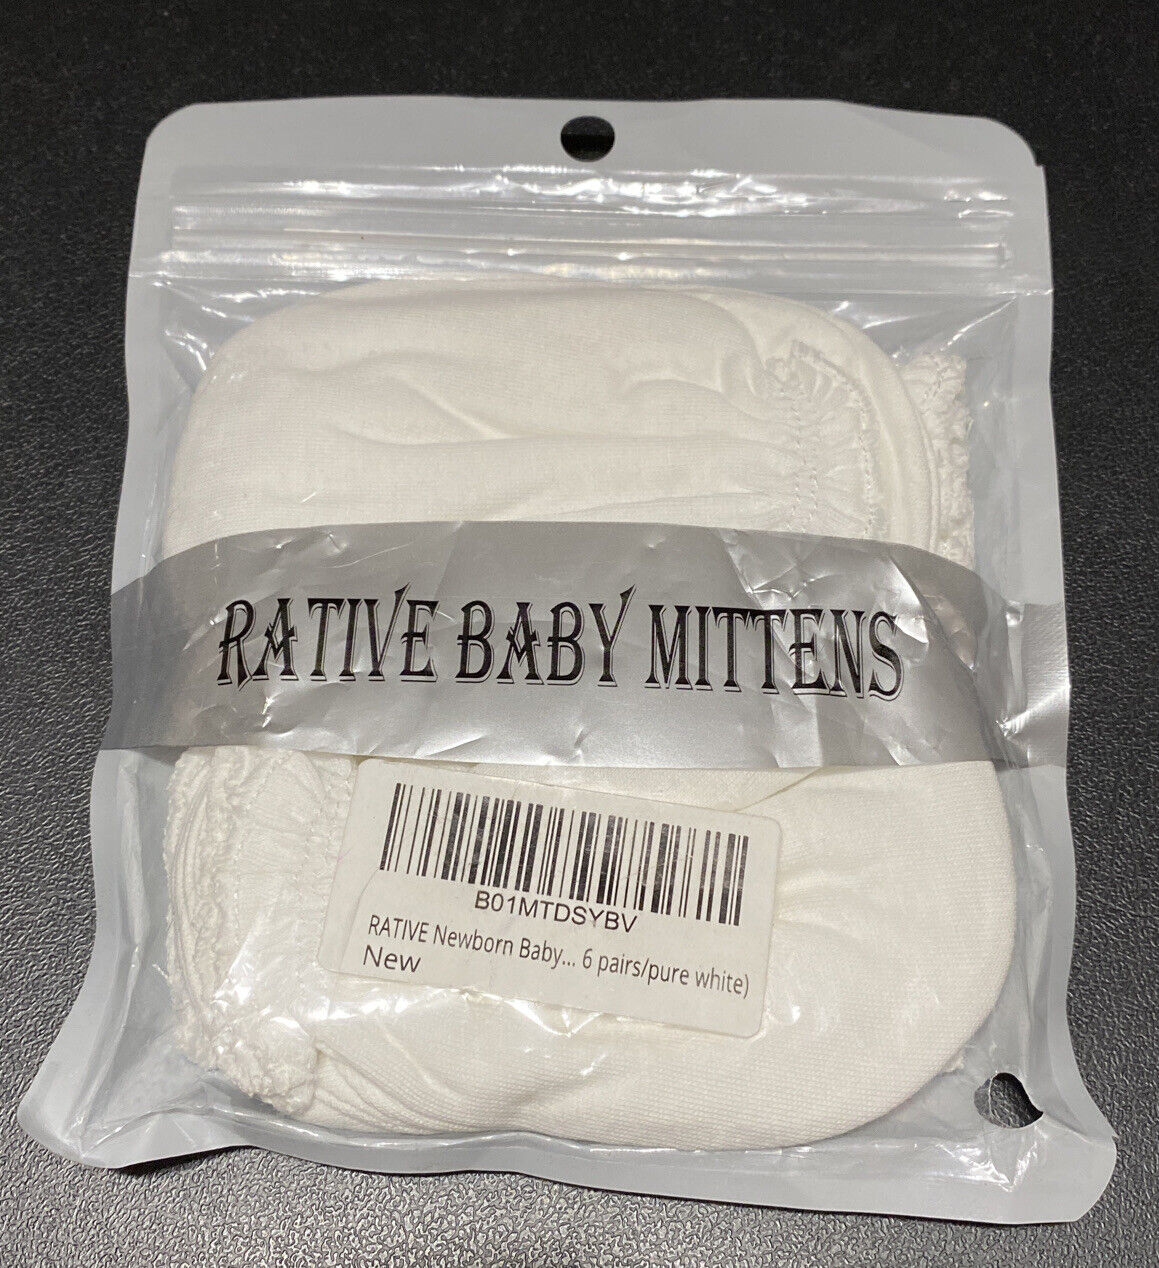 Rative Newborn Baby Mittens 100% Cotton White 6 Pair New